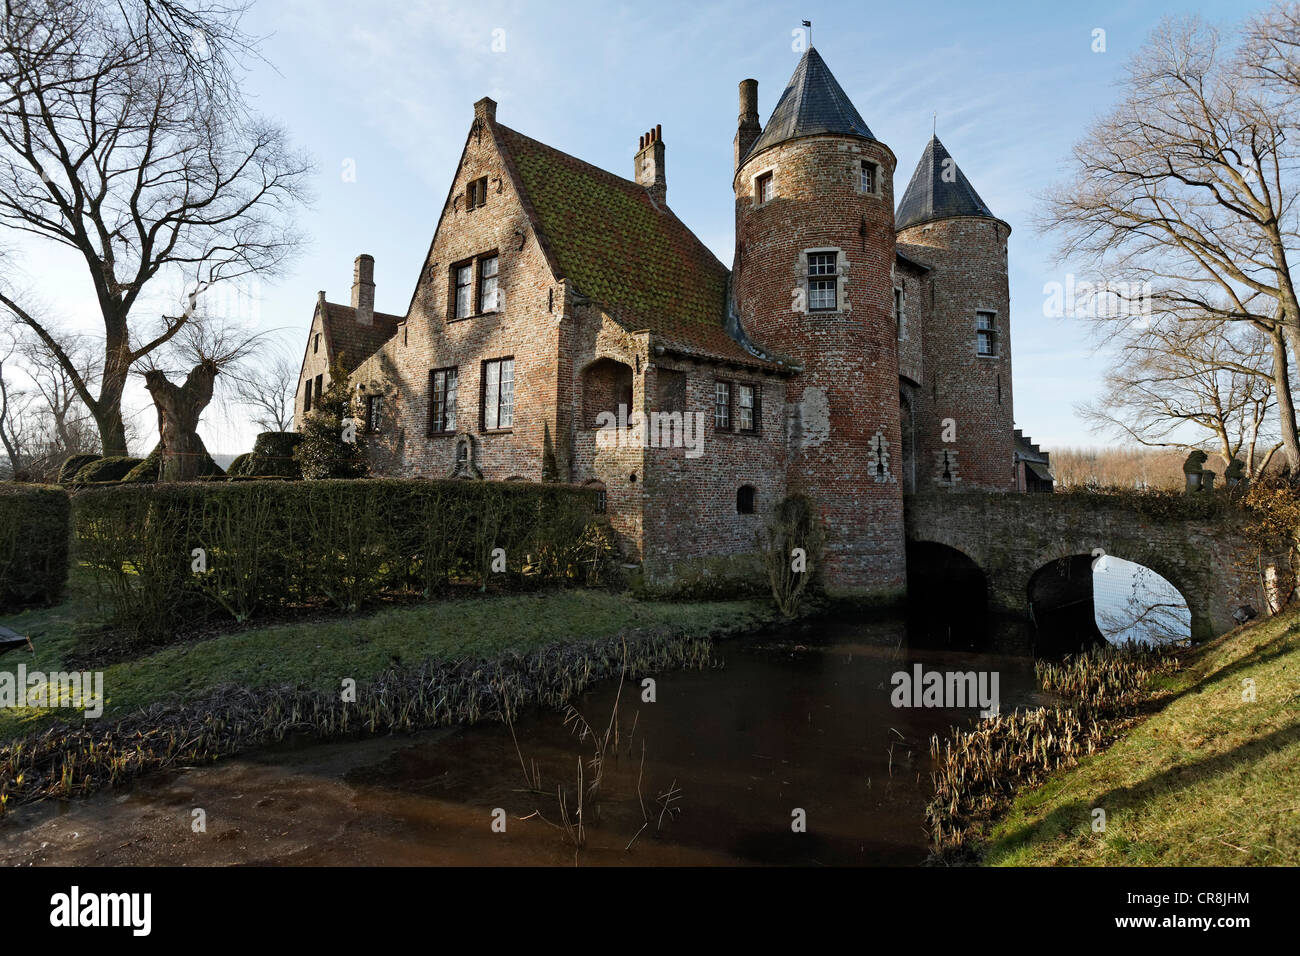 Ooostkerke château du 14ème siècle, village de Ooostkerke-Damme, Flandre occidentale, Belgique, Europe Banque D'Images